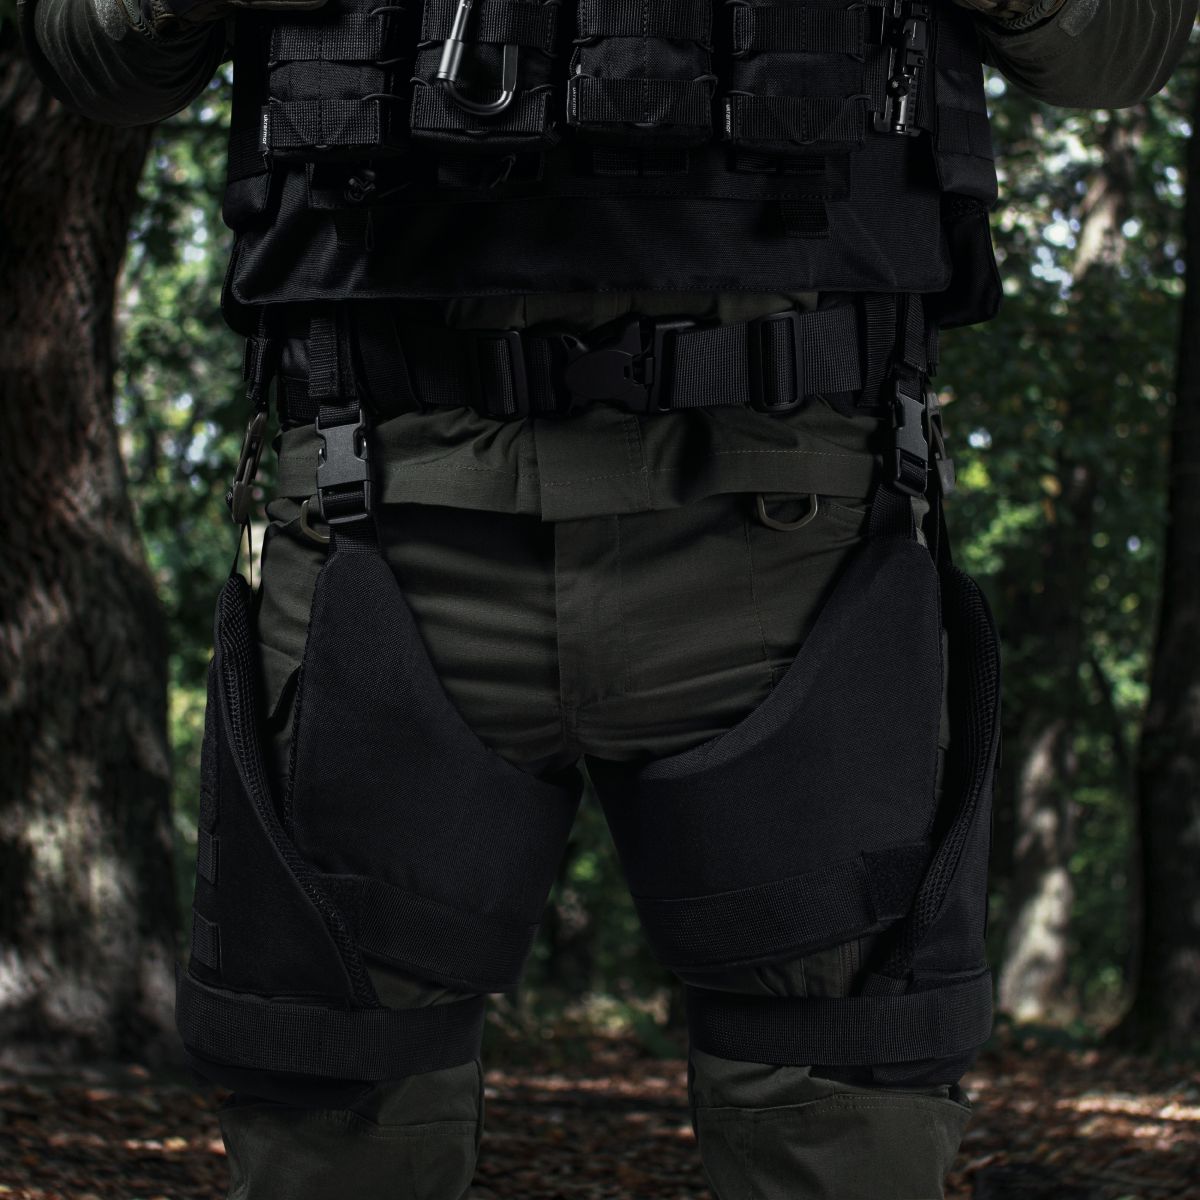 Захист внутрішньої частини стегна 2-го класу захисту (з балістичним пакетом). Чорний 2